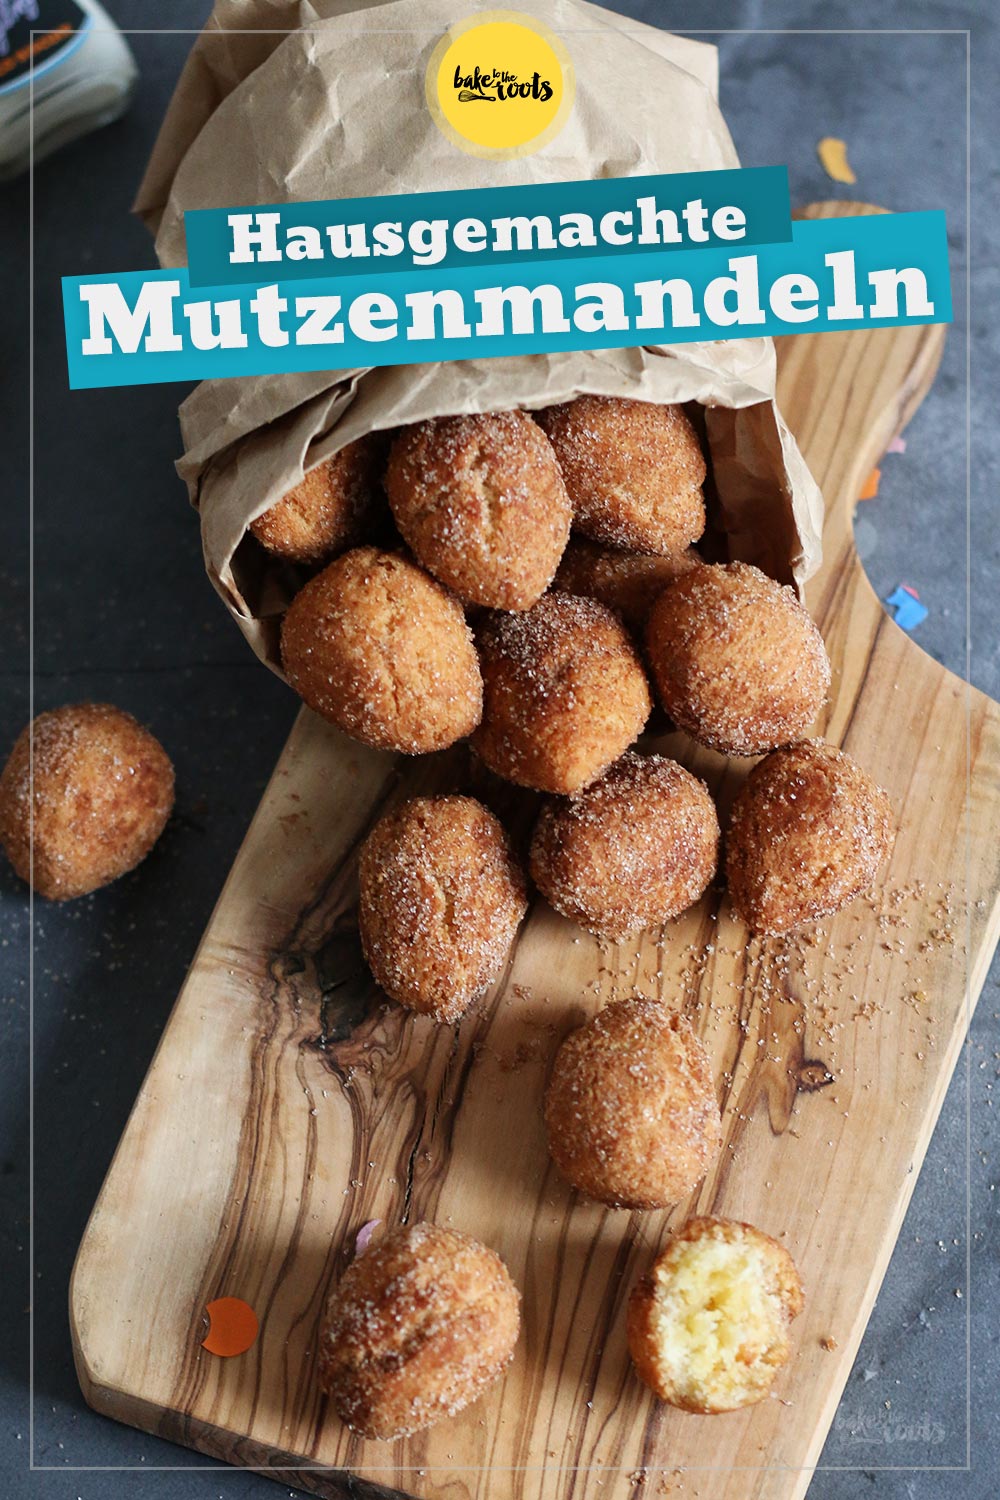 Hausgemachte Mutzenmandeln | Bake to the roots